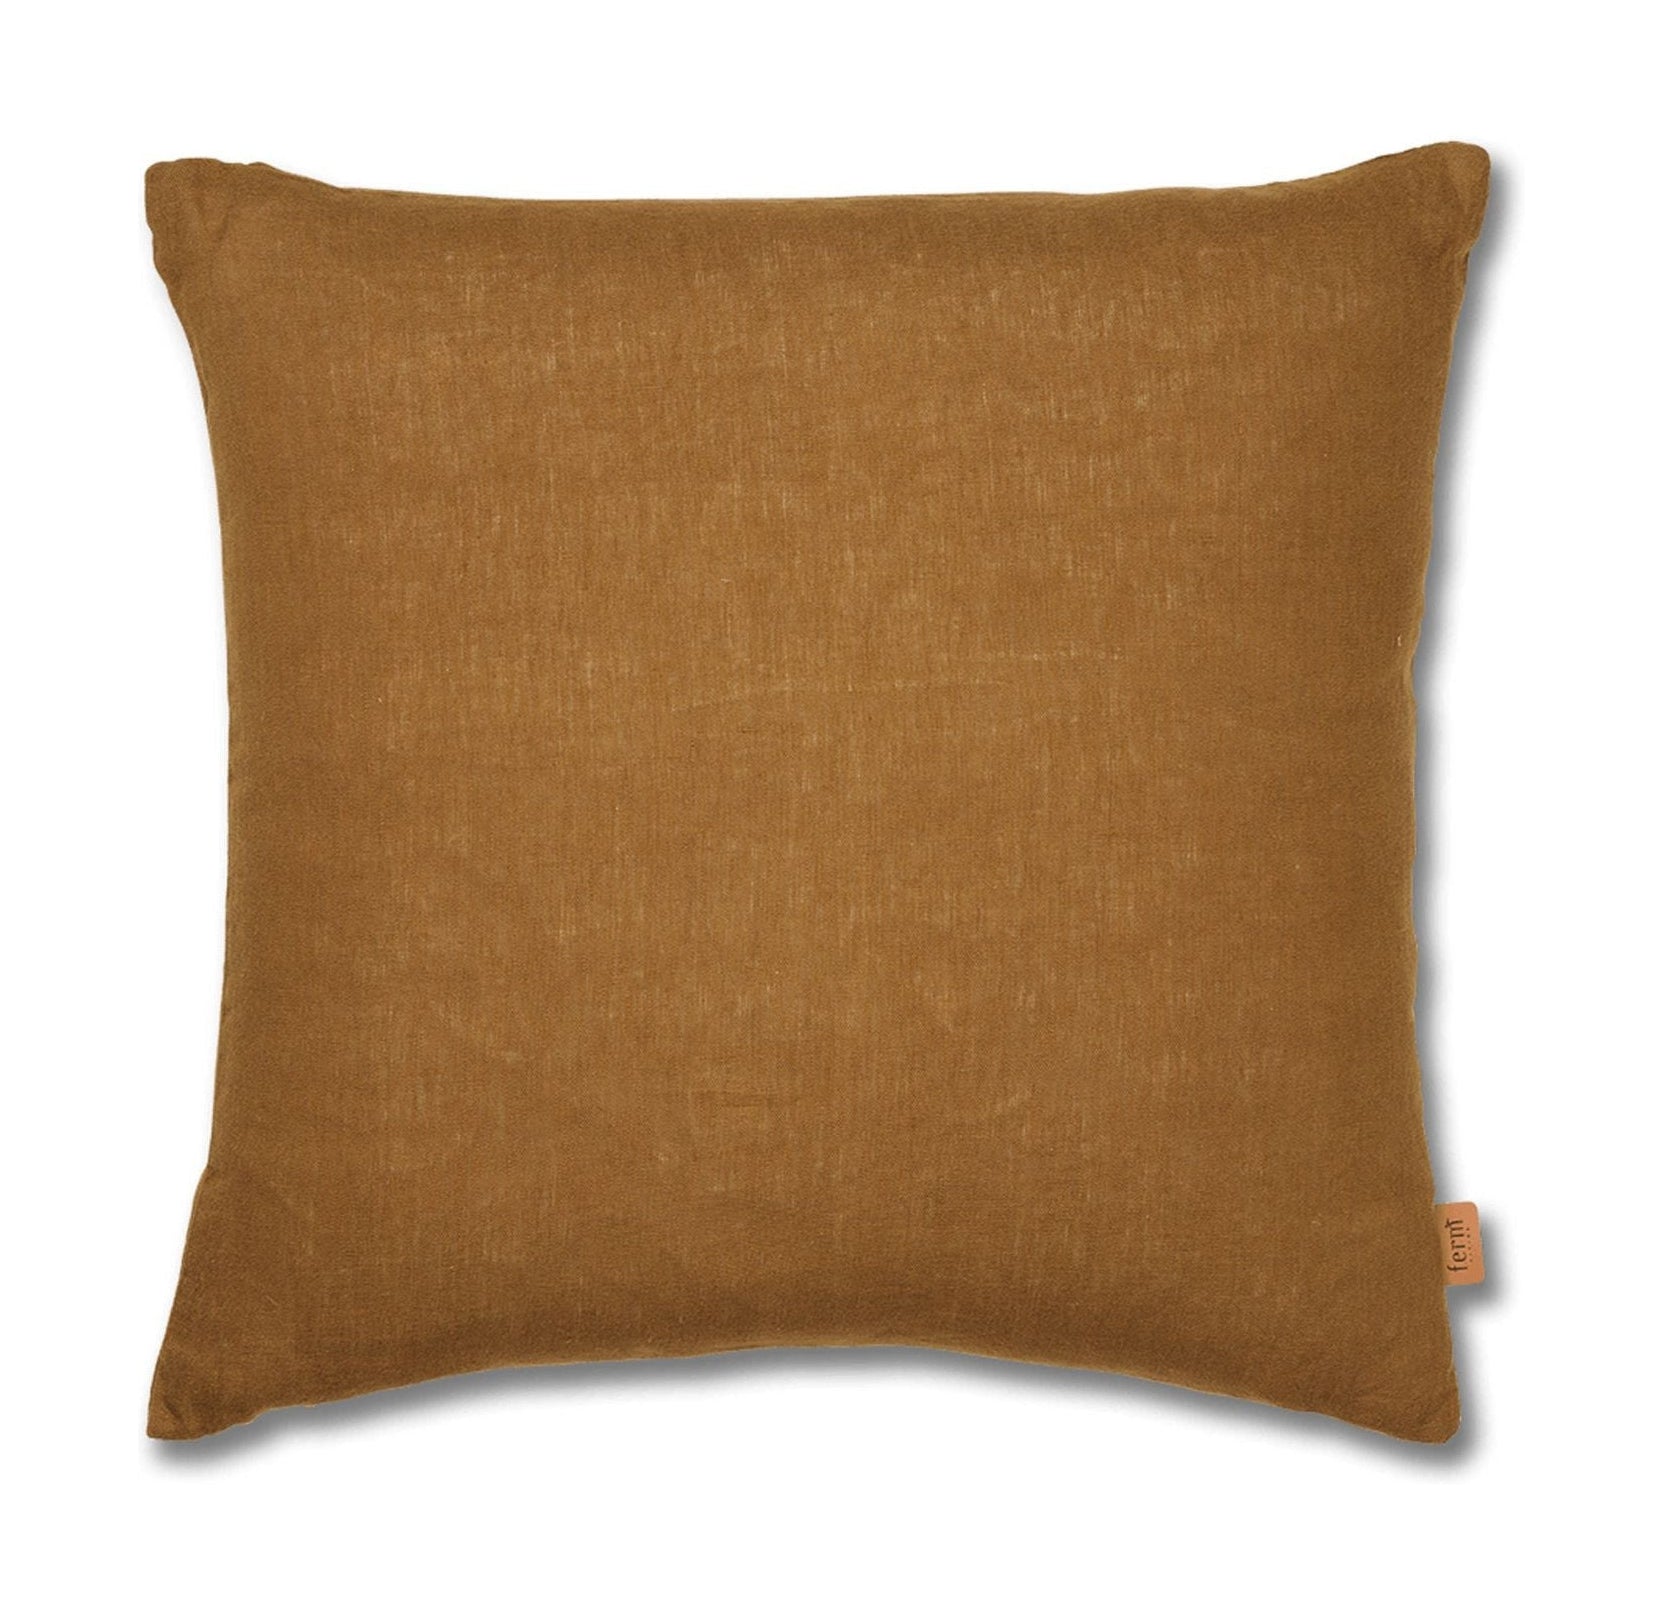 Ferm Living Linen Cushion Cover, Sugar Kelp